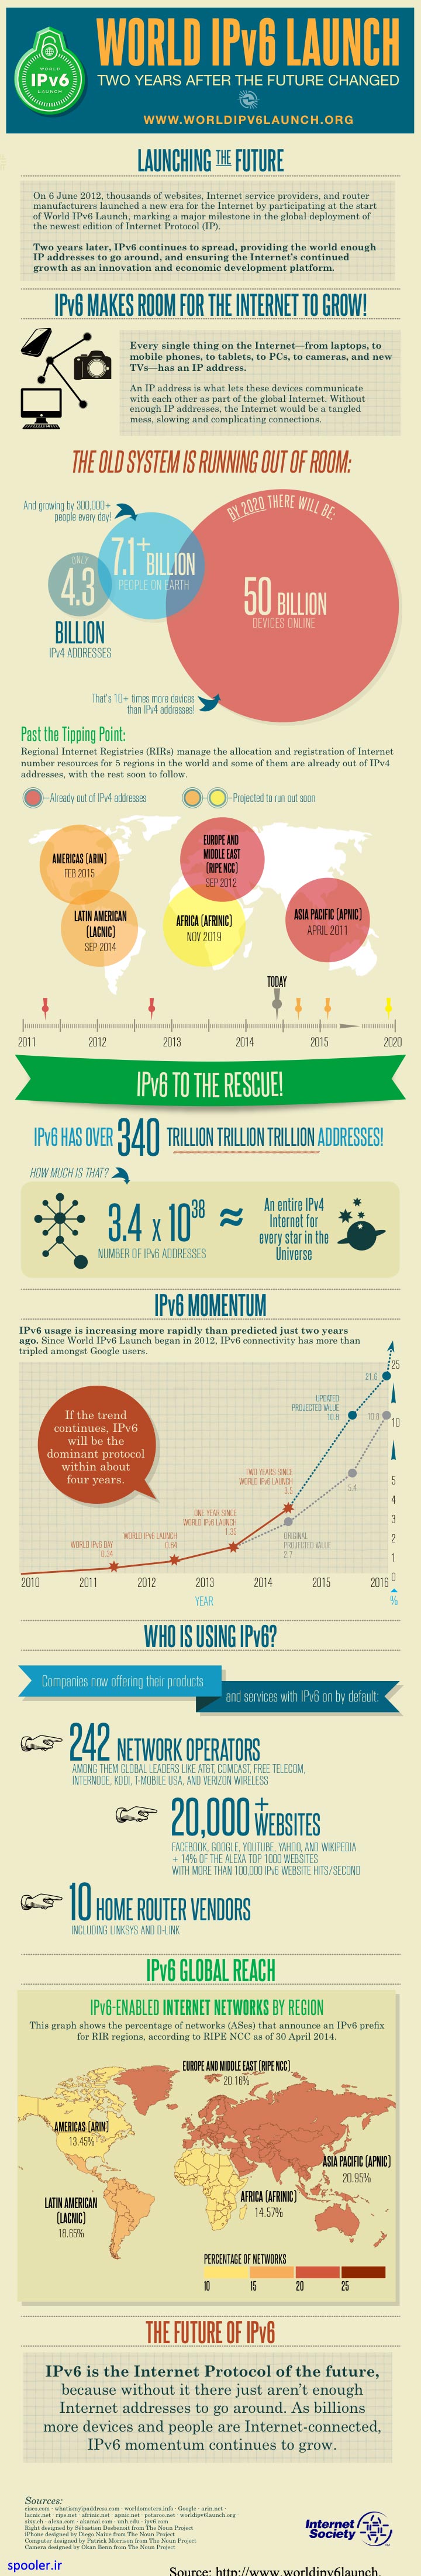 آخرین تحولات پس از اجرا IPv6 در سال 2012